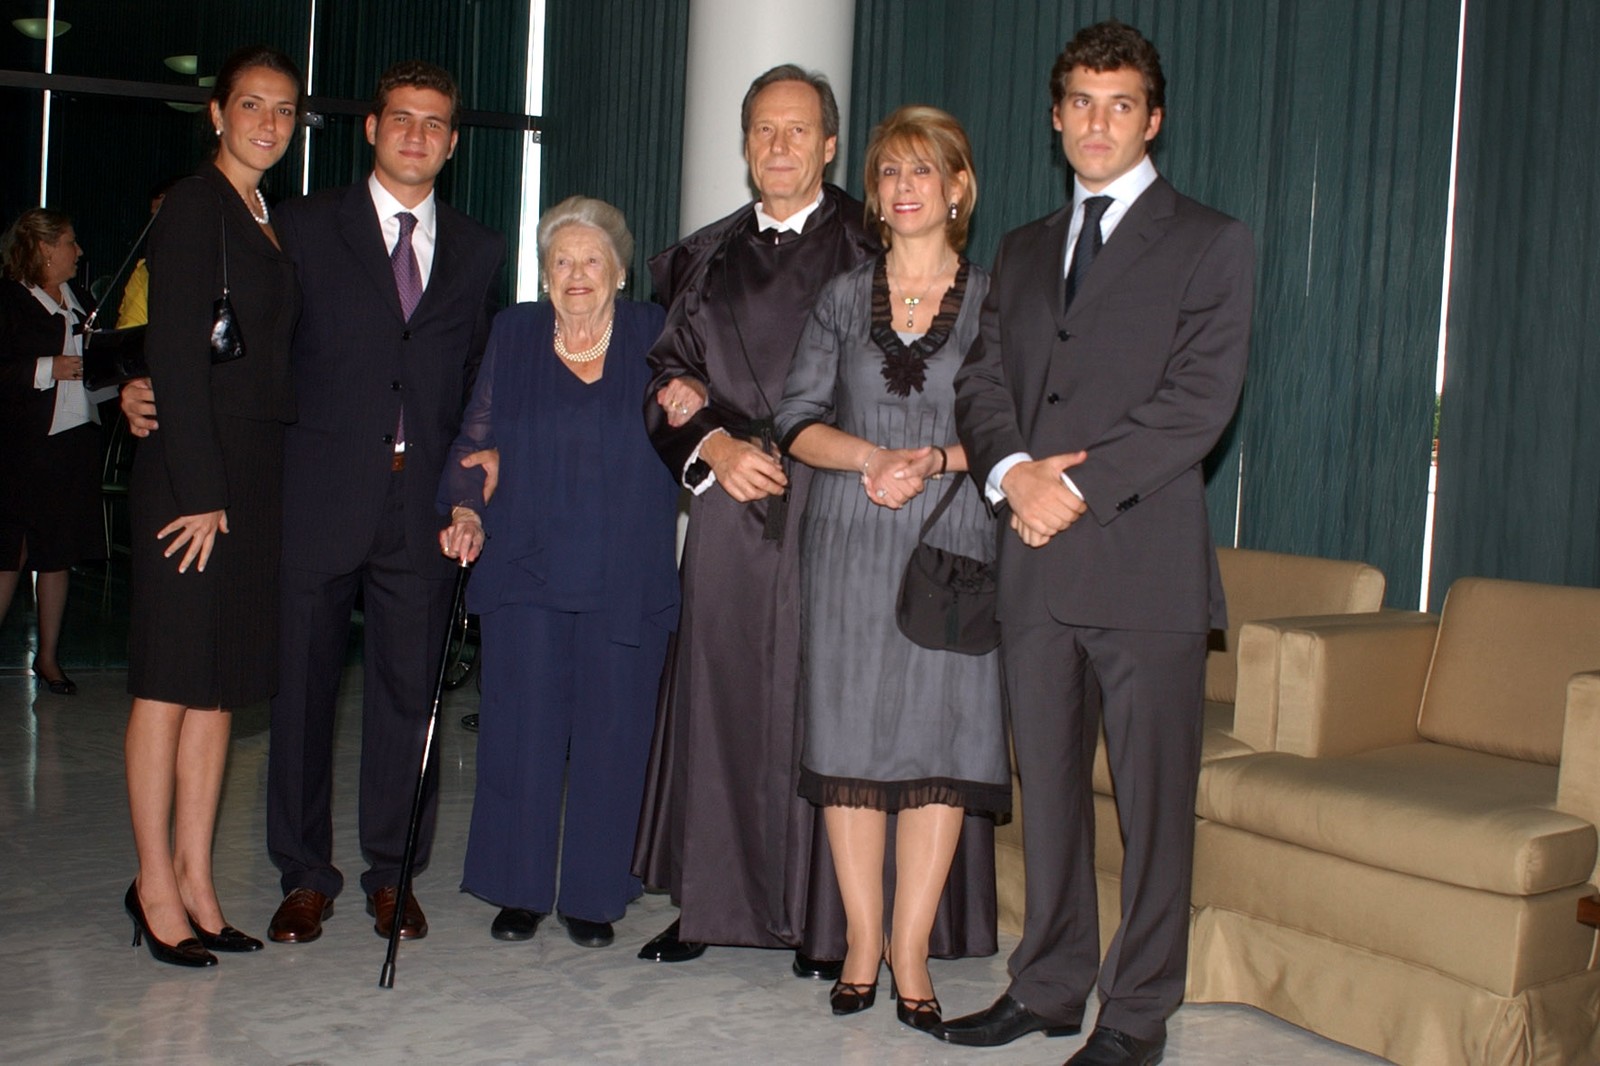 Em 2006, o novo ministro foi indicado pelo então presidente Lula em seu primeiro mandato. Lewandowski com a família no dia da posse, em 2006 — Foto: Divulgação/STF